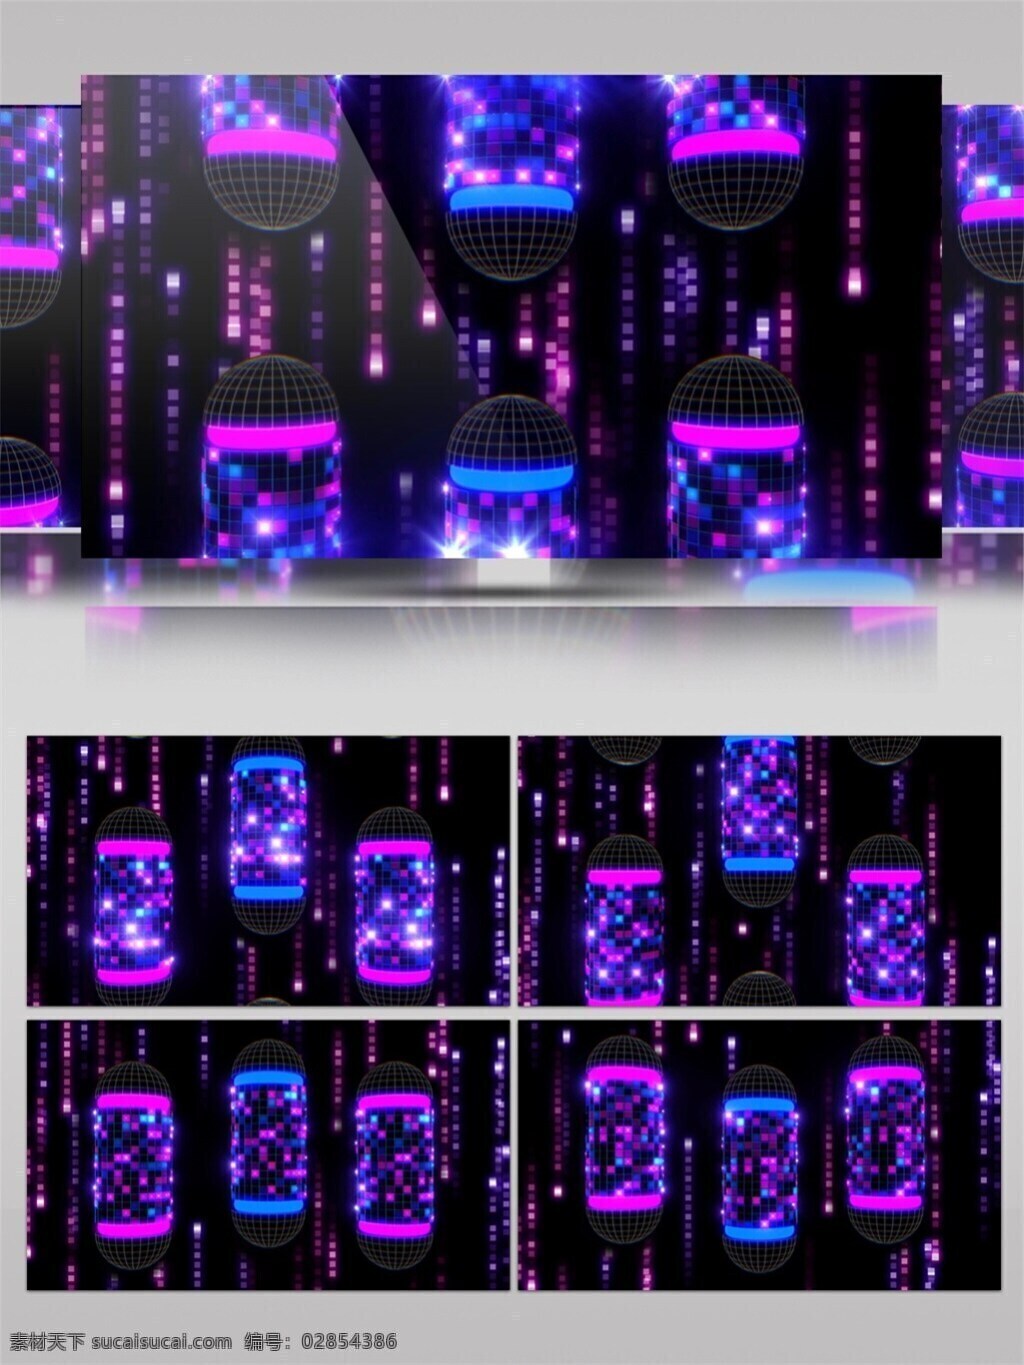 炫 酷 紫光 柱体 高清 视频 壁纸图案 动态展示 房间装饰 华丽炫酷 特效 背景 装饰风格